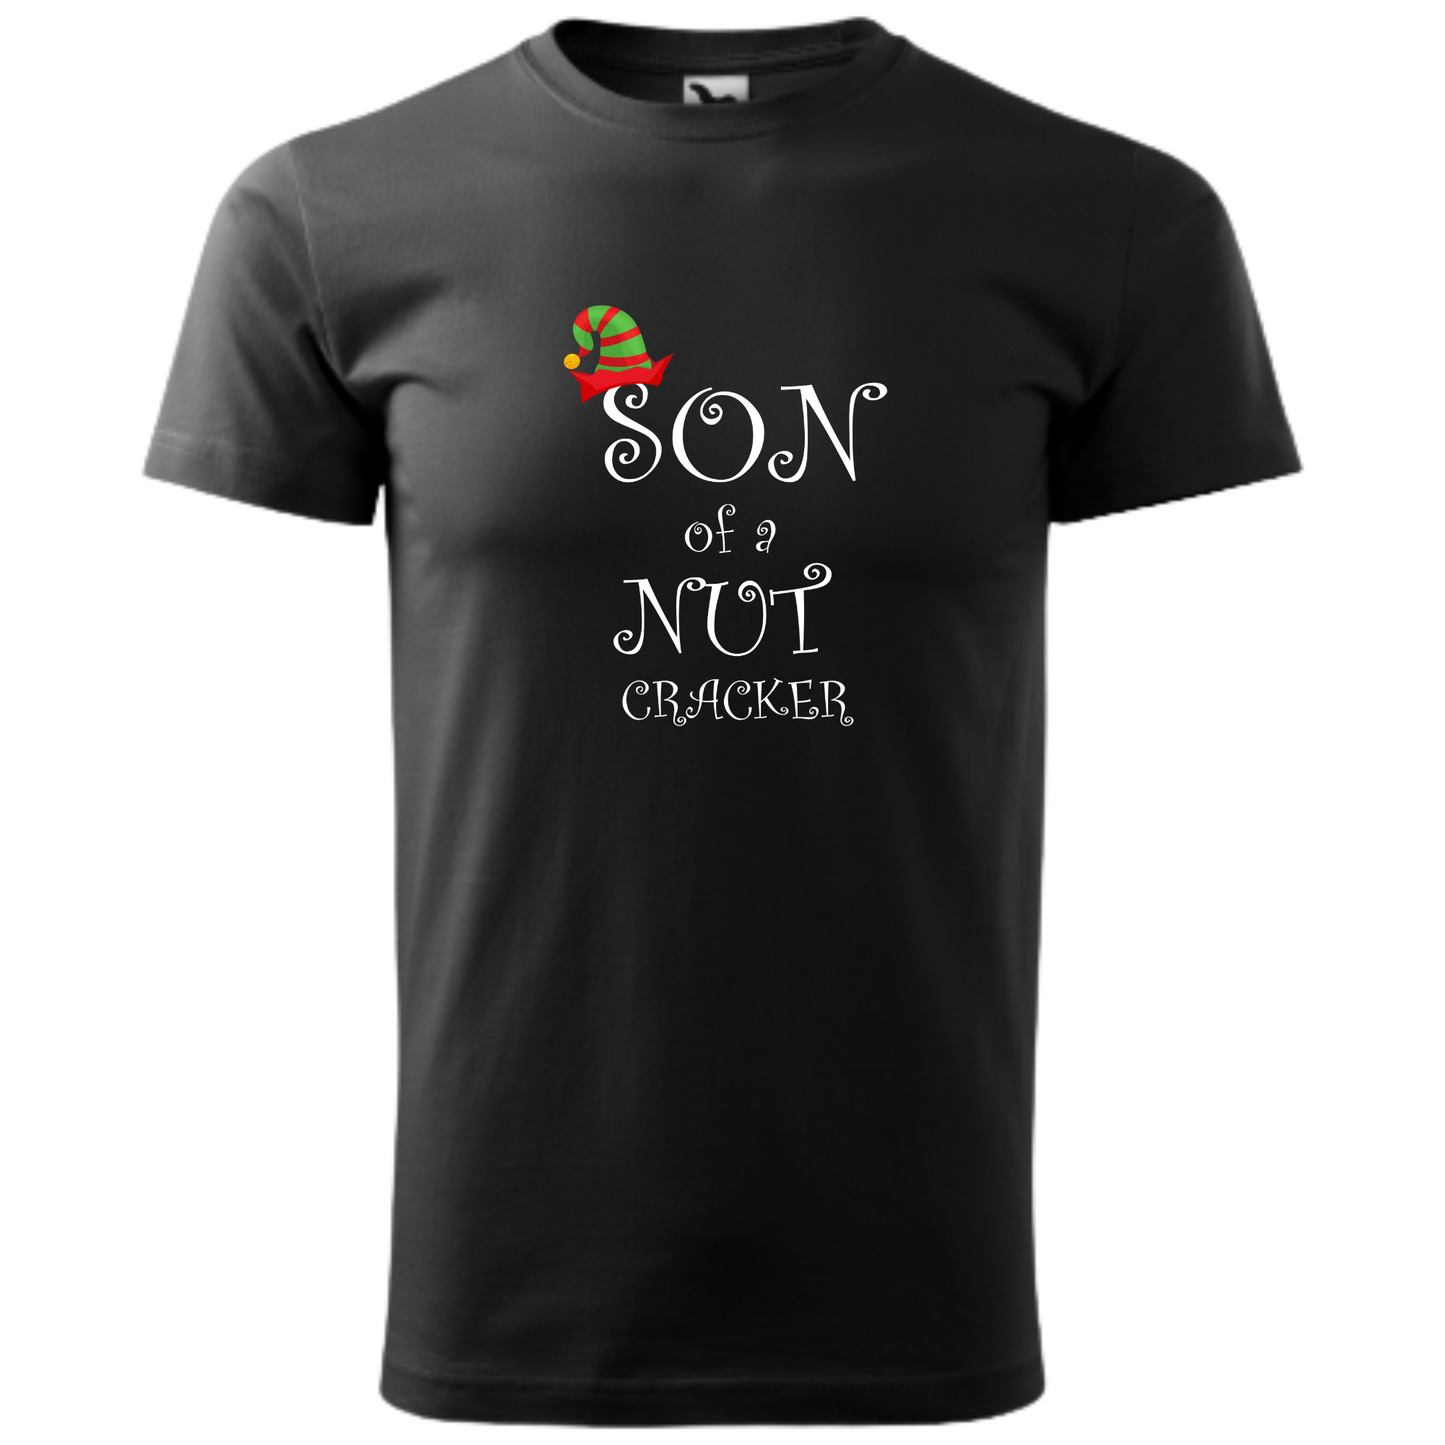 Tricou personalizat Craciun cu mesajul Son of a Nut Cracker